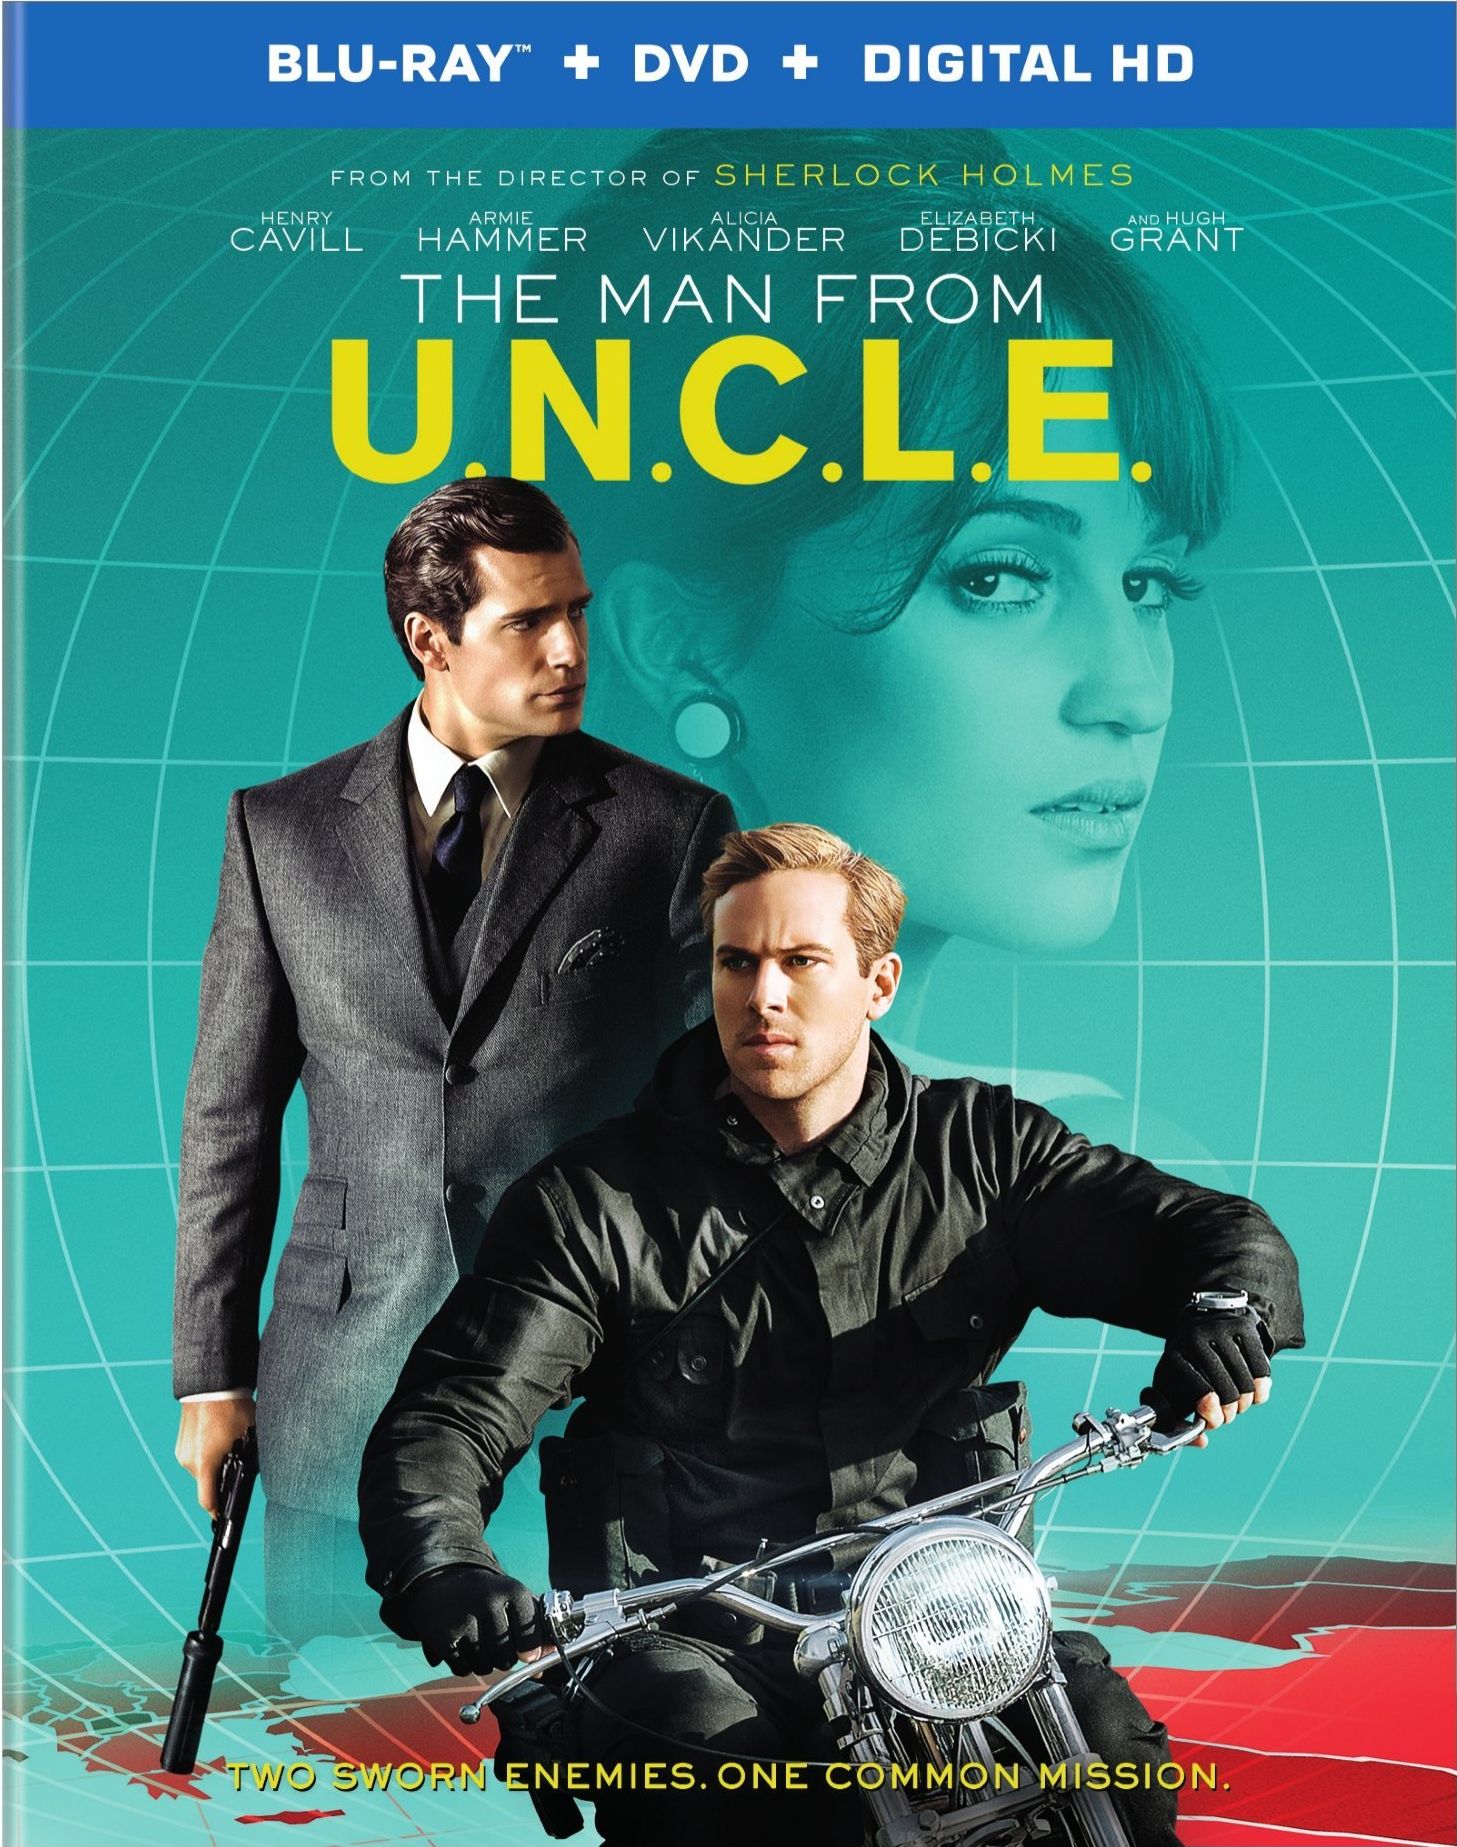 The Man from U.N.C.L.E. DVD Release Date November 17, 2015